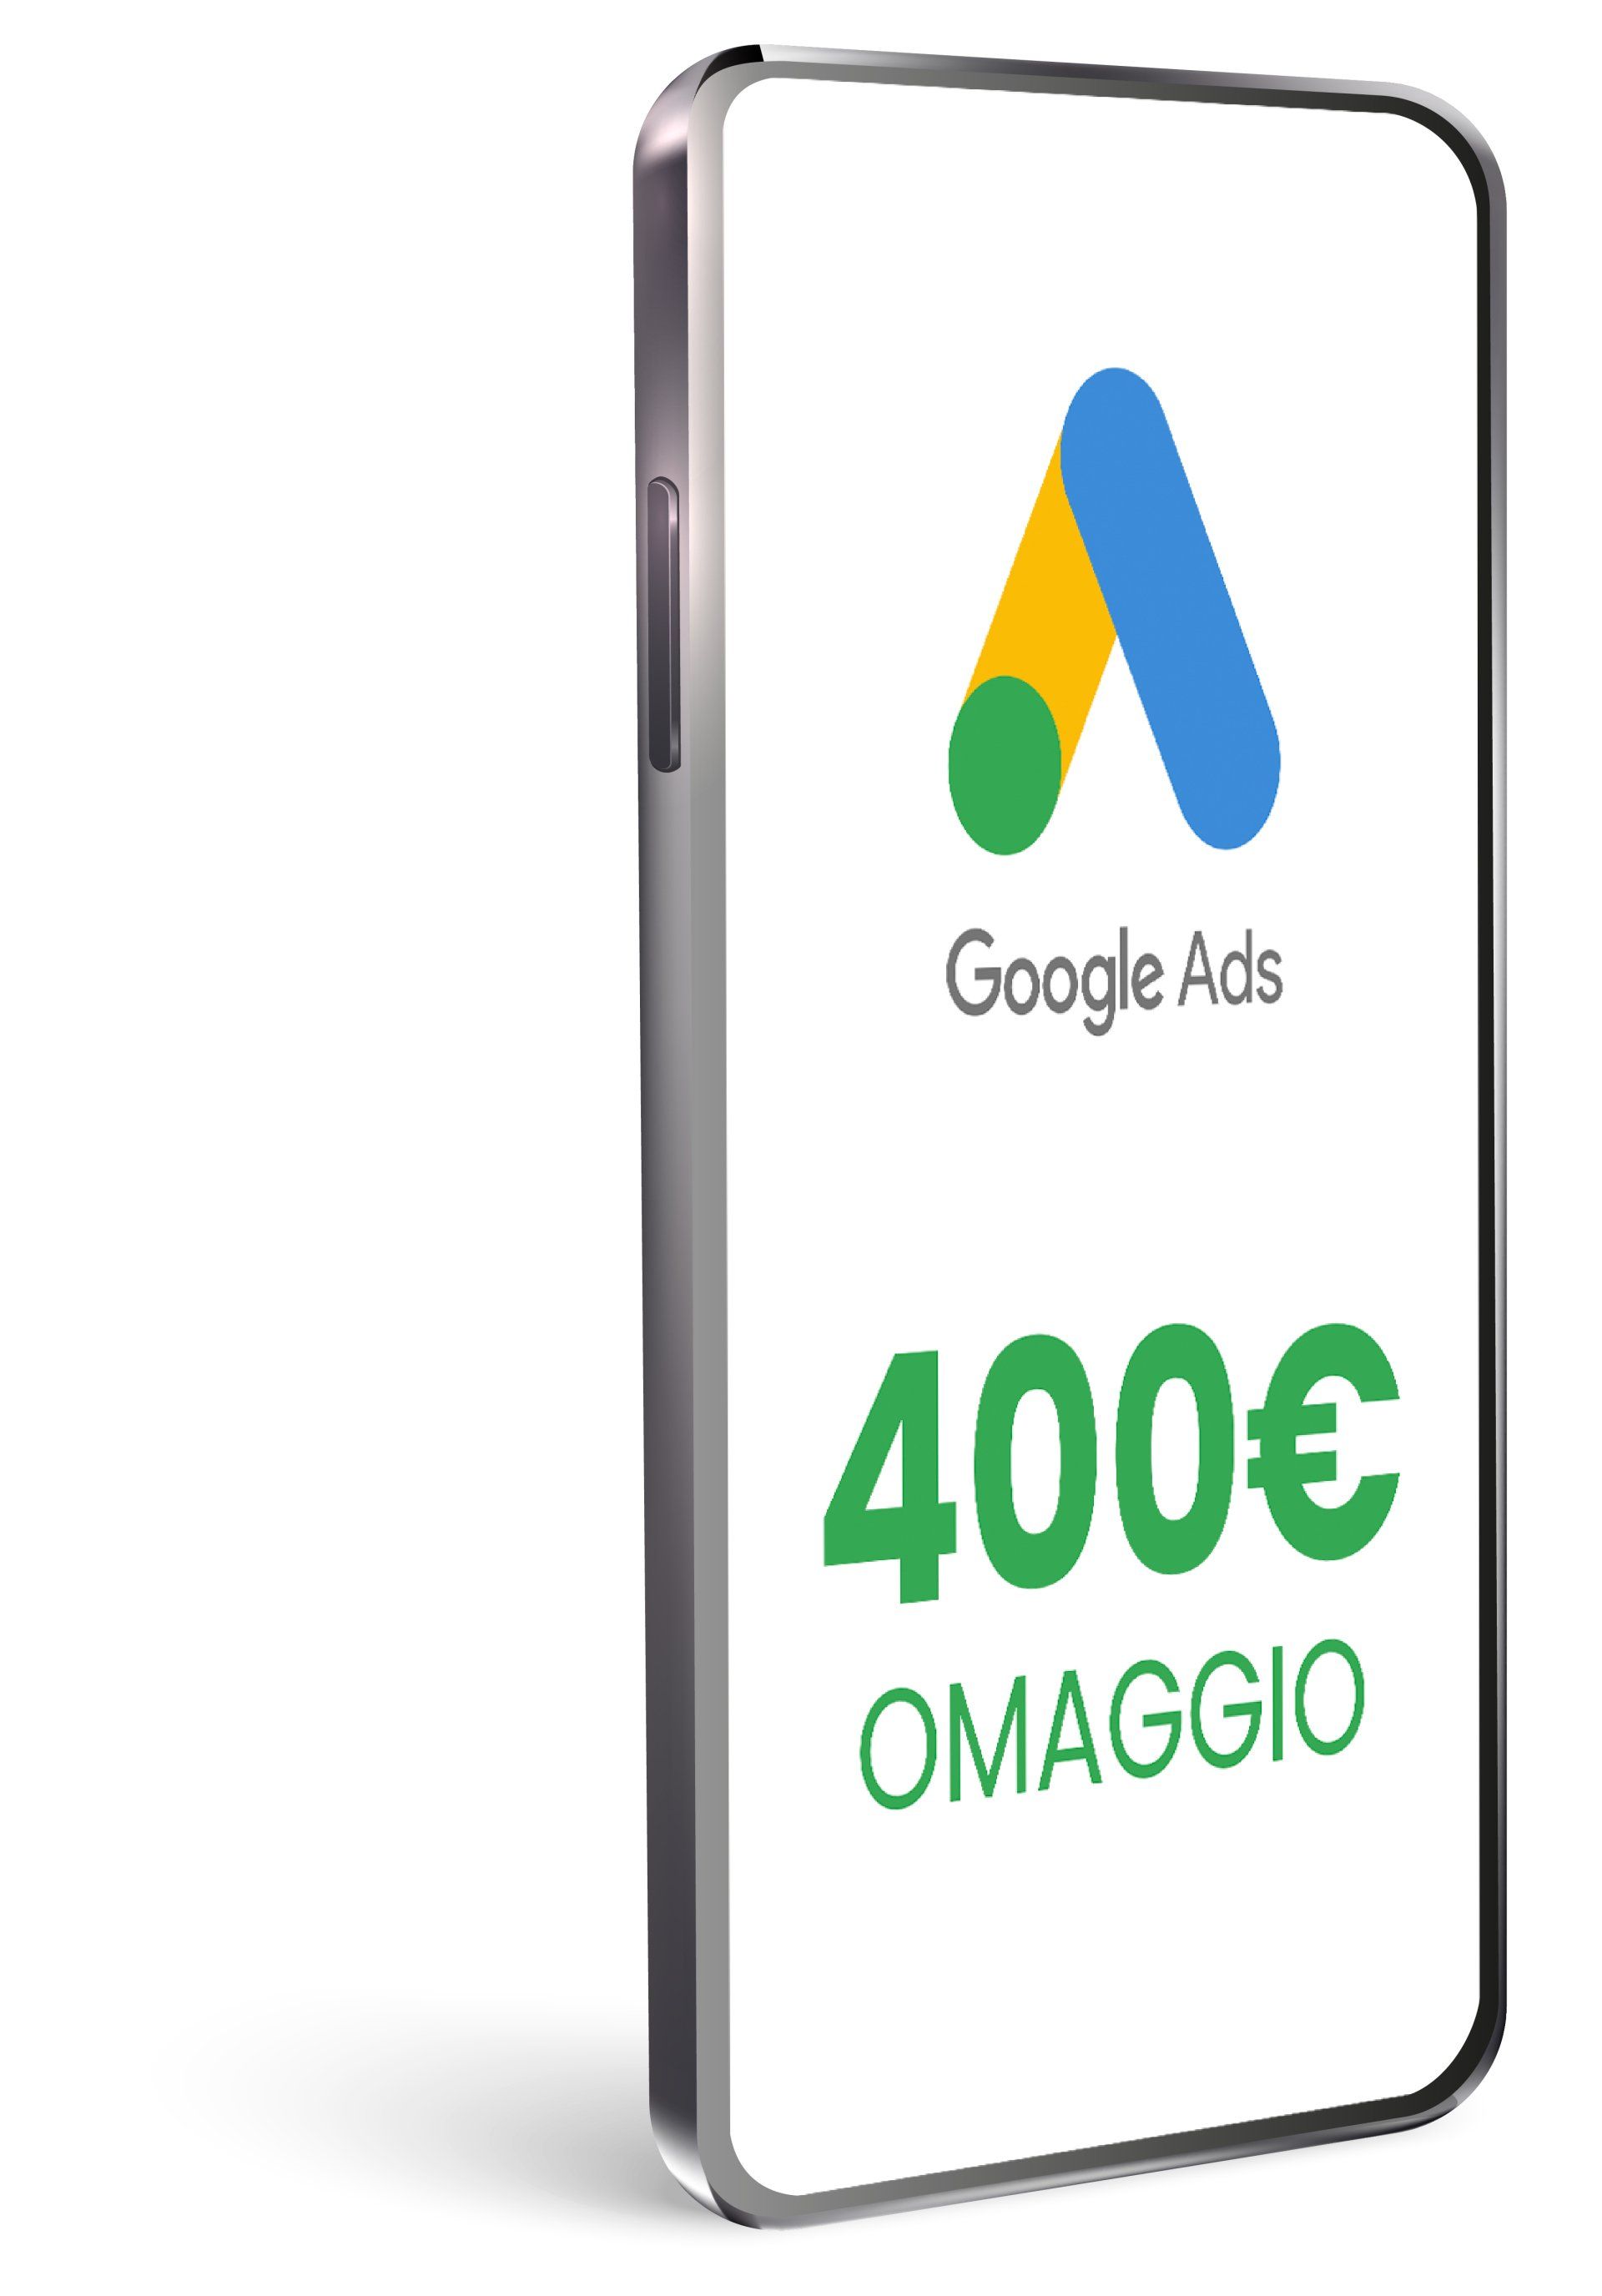 un telefono con l' immagine di google ads e 400 euro omaggio